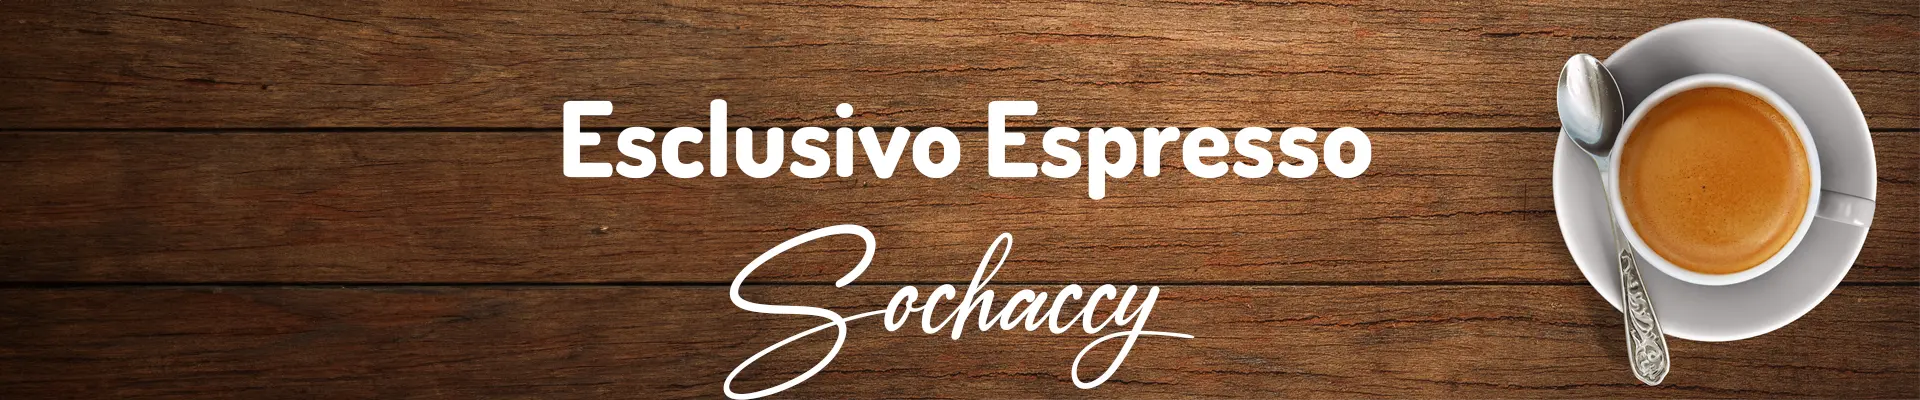 Kawa Sochaccy Esclusivo Espresso